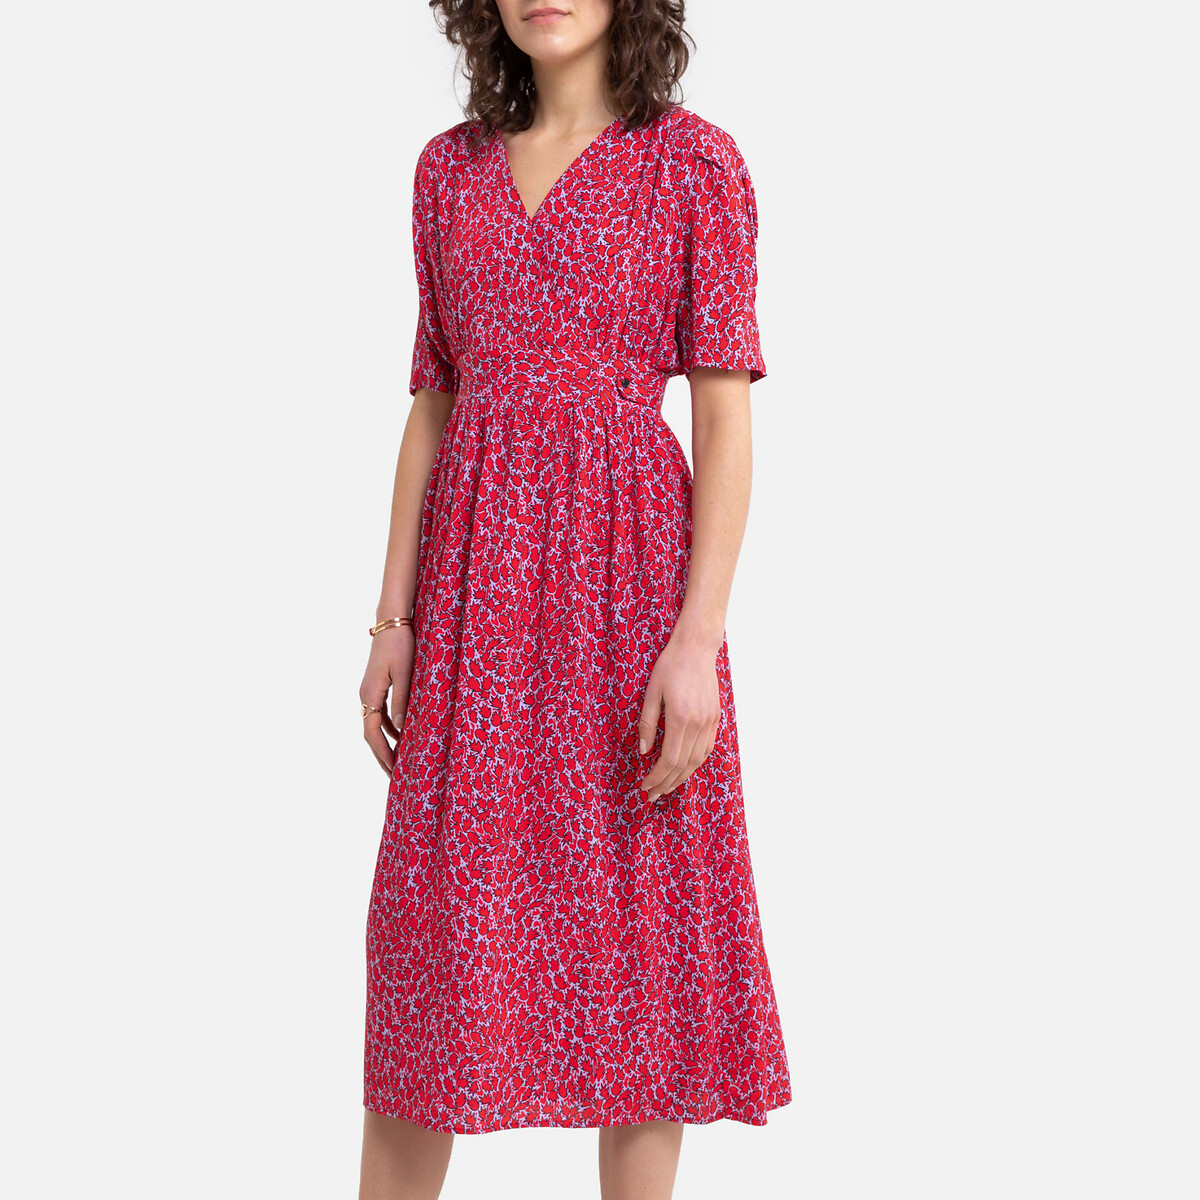 Платье La Redoute Длинное с запахом с принтом 1(S) красный, размер 1(S) Длинное с запахом с принтом 1(S) красный - фото 2